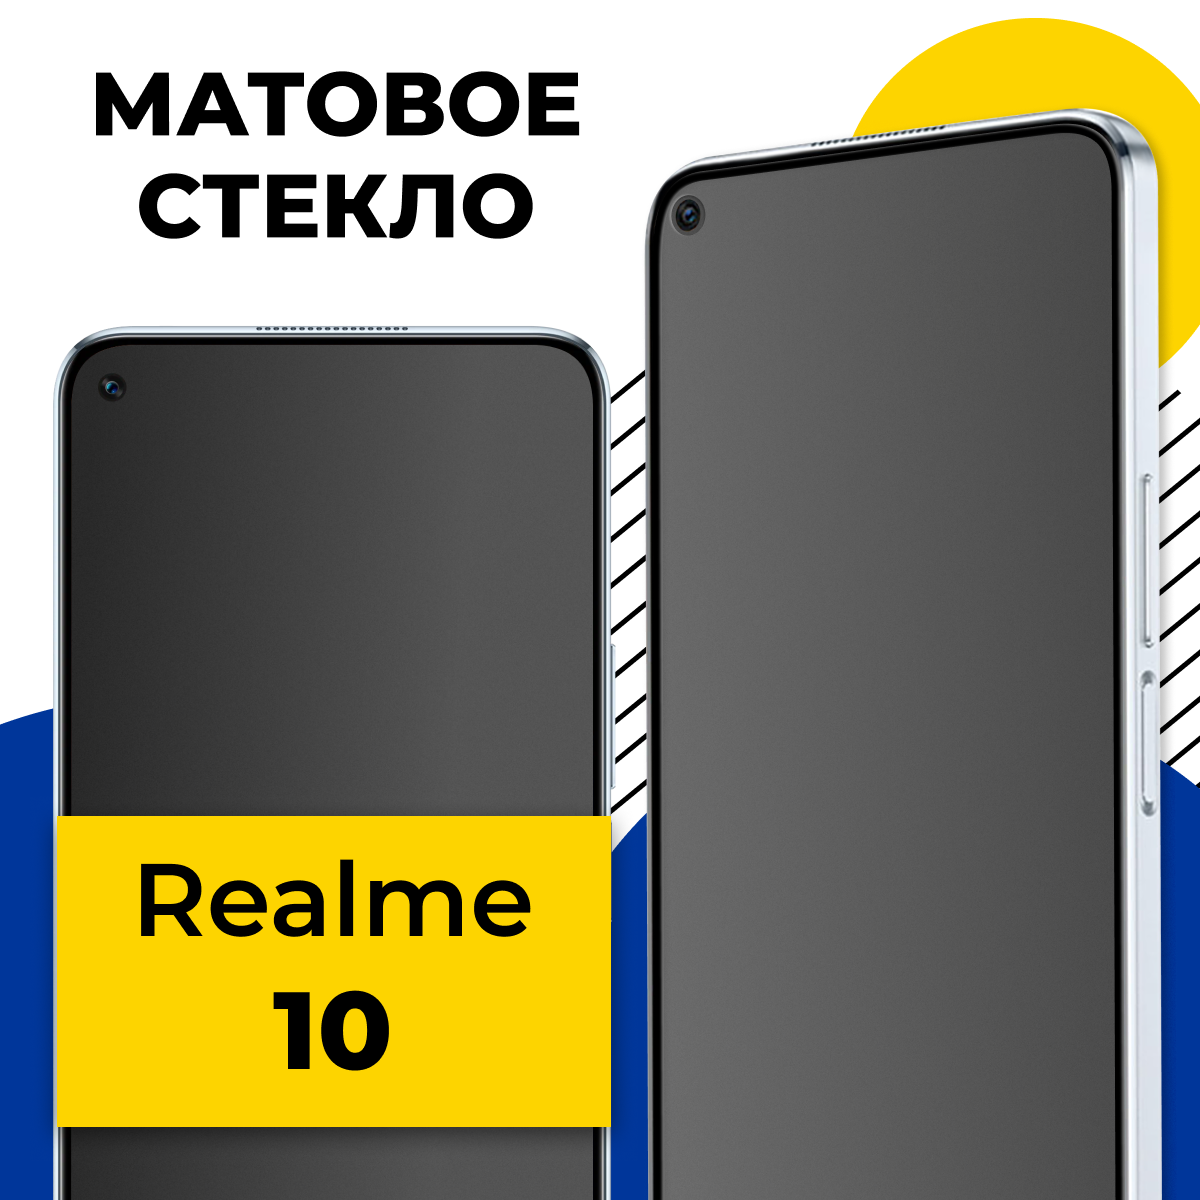 Матовое защитное стекло на телефон Realme 10 / Противоударное полноэкранное стекло 2.5D на смартфон Реалми 10 с олеофобным покрытием